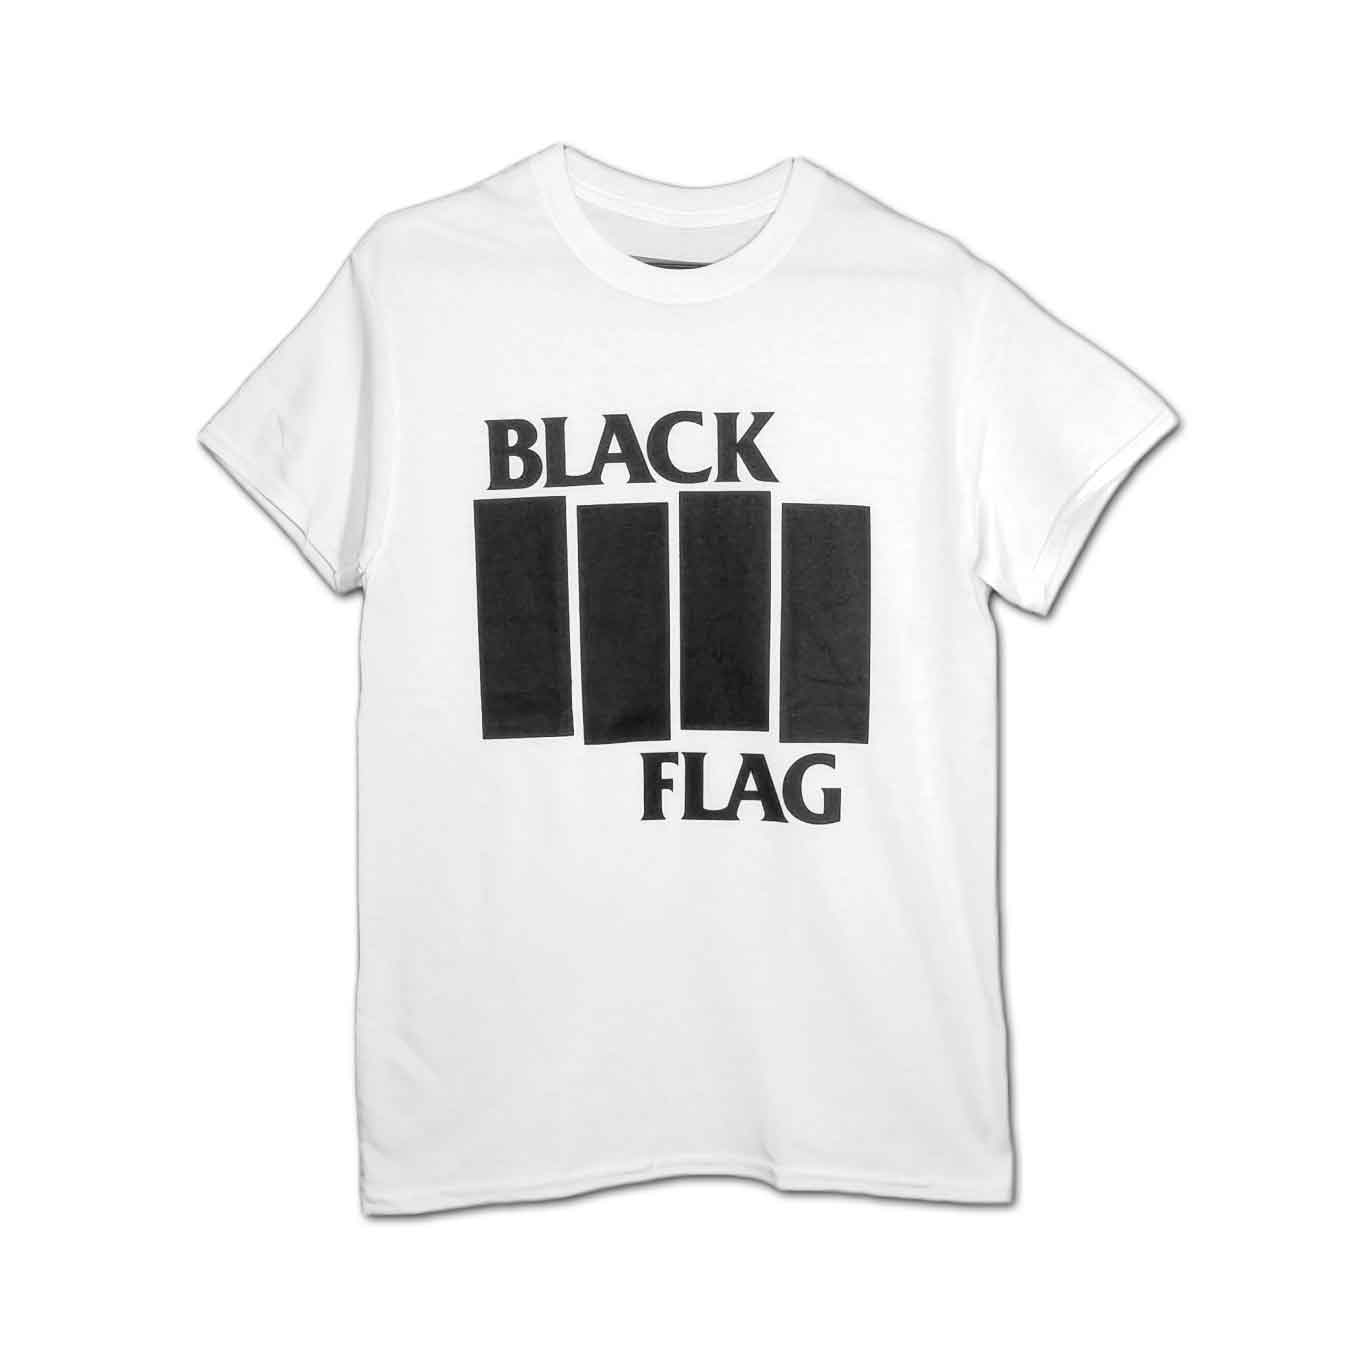 Black Flag バンドTシャツ ブラック・フラッグ Bars & Logo - バンドT 